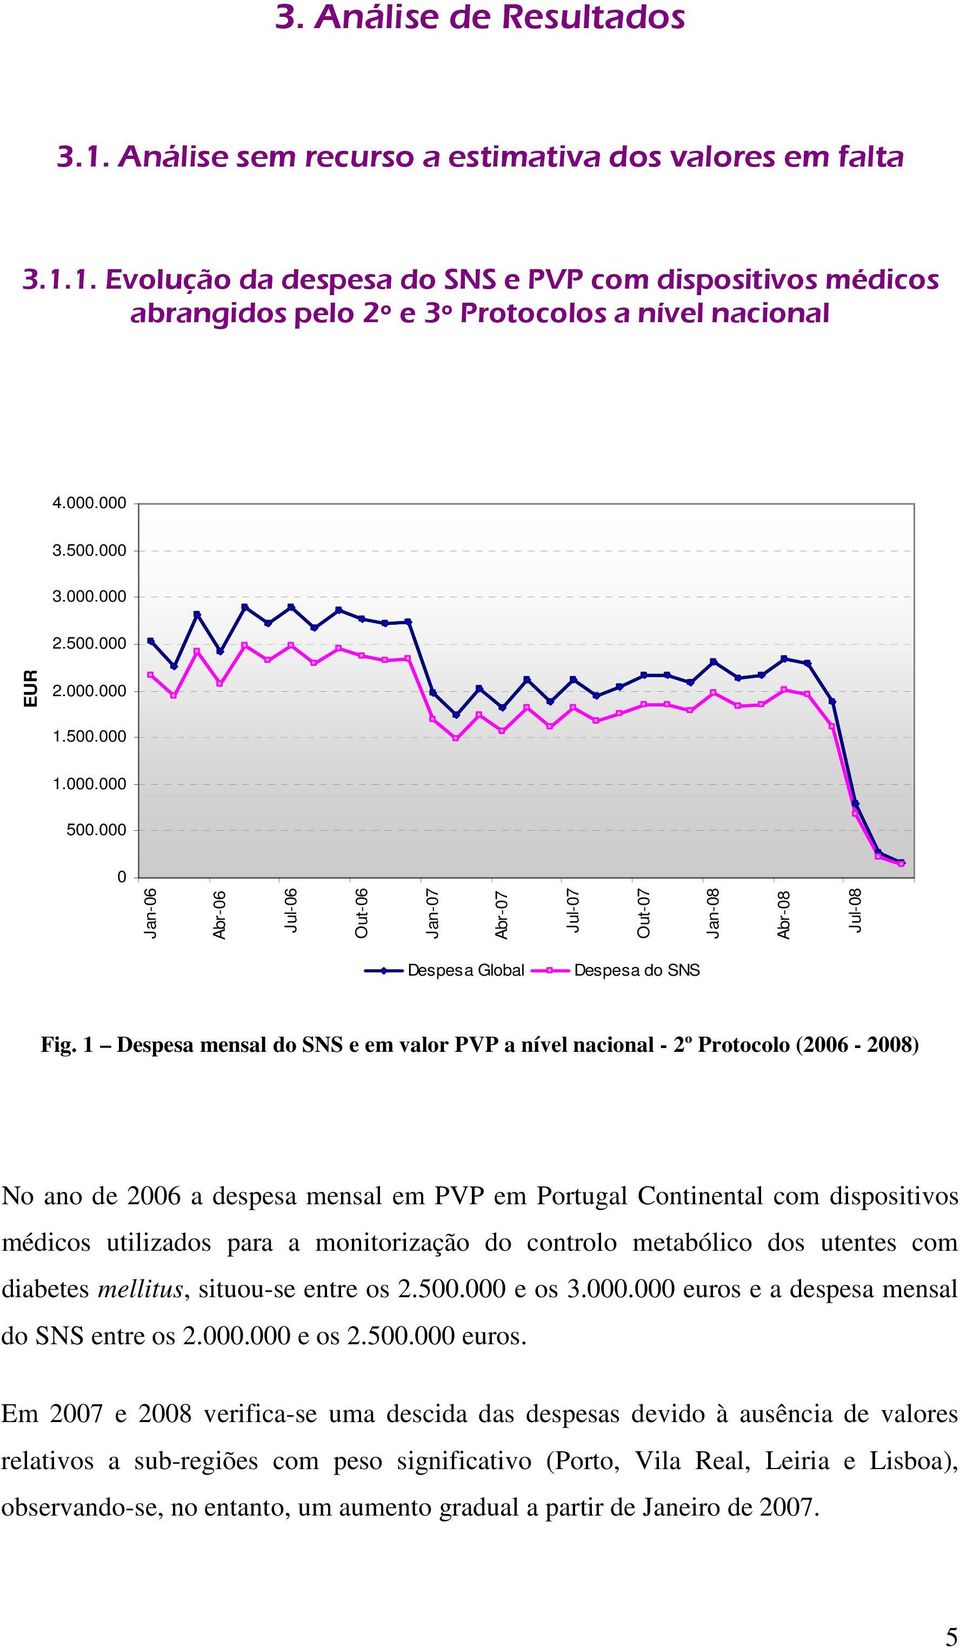 1 Despesa mensal do SNS e em valor PVP a nível nacional - 2º Protocolo (2006-2008) No ano de 2006 a despesa mensal em PVP em Portugal Continental com dispositivos médicos utilizados para a